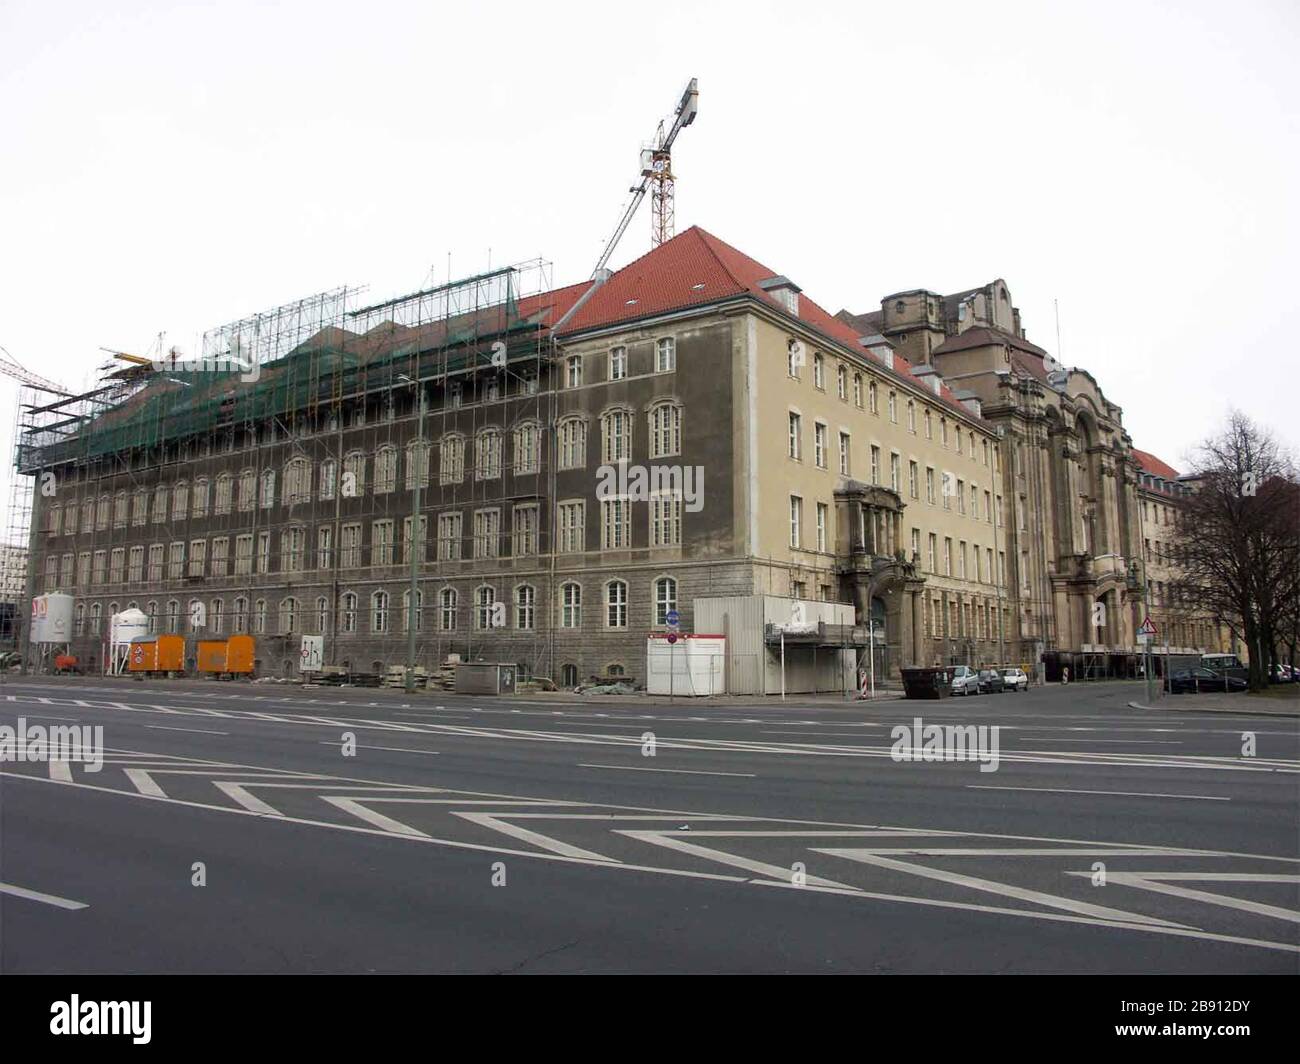 Deutsch: Diese Abbildung zeigt nicht das Gericht ehemalige Oberste der DDR  en der Scharnhorststraße, sondern das